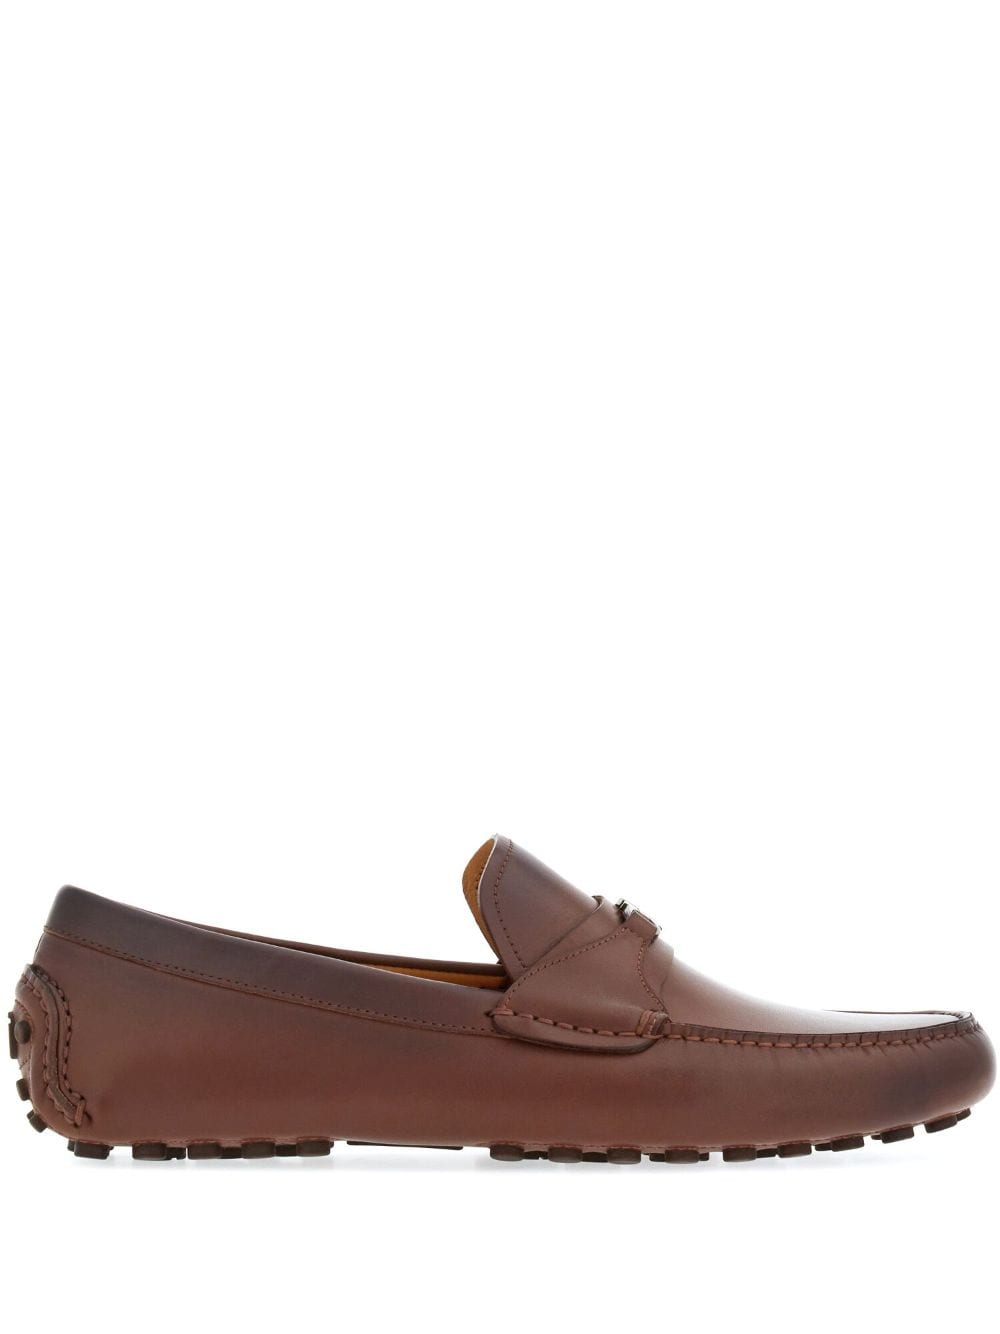 Ferragamo Gancini leather loafers - Brown von Ferragamo